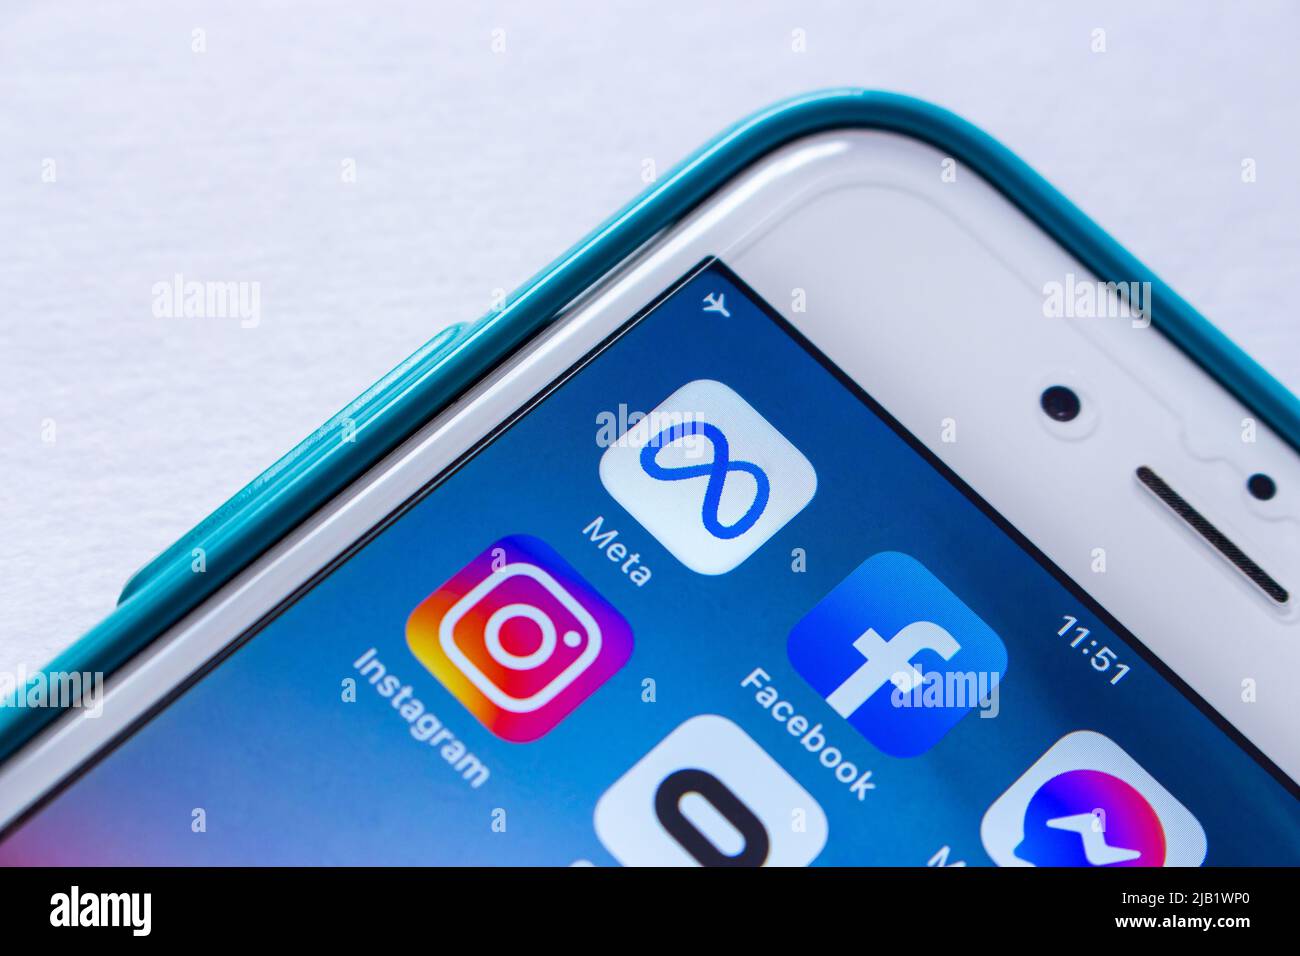 Icona closeup del conglomerato tecnologico statunitense Meta Platforms, Inc. E dei suoi marchi (Facebook, Messenger, WhatsApp, Instagram e Oculus VR) su iPhone Foto Stock